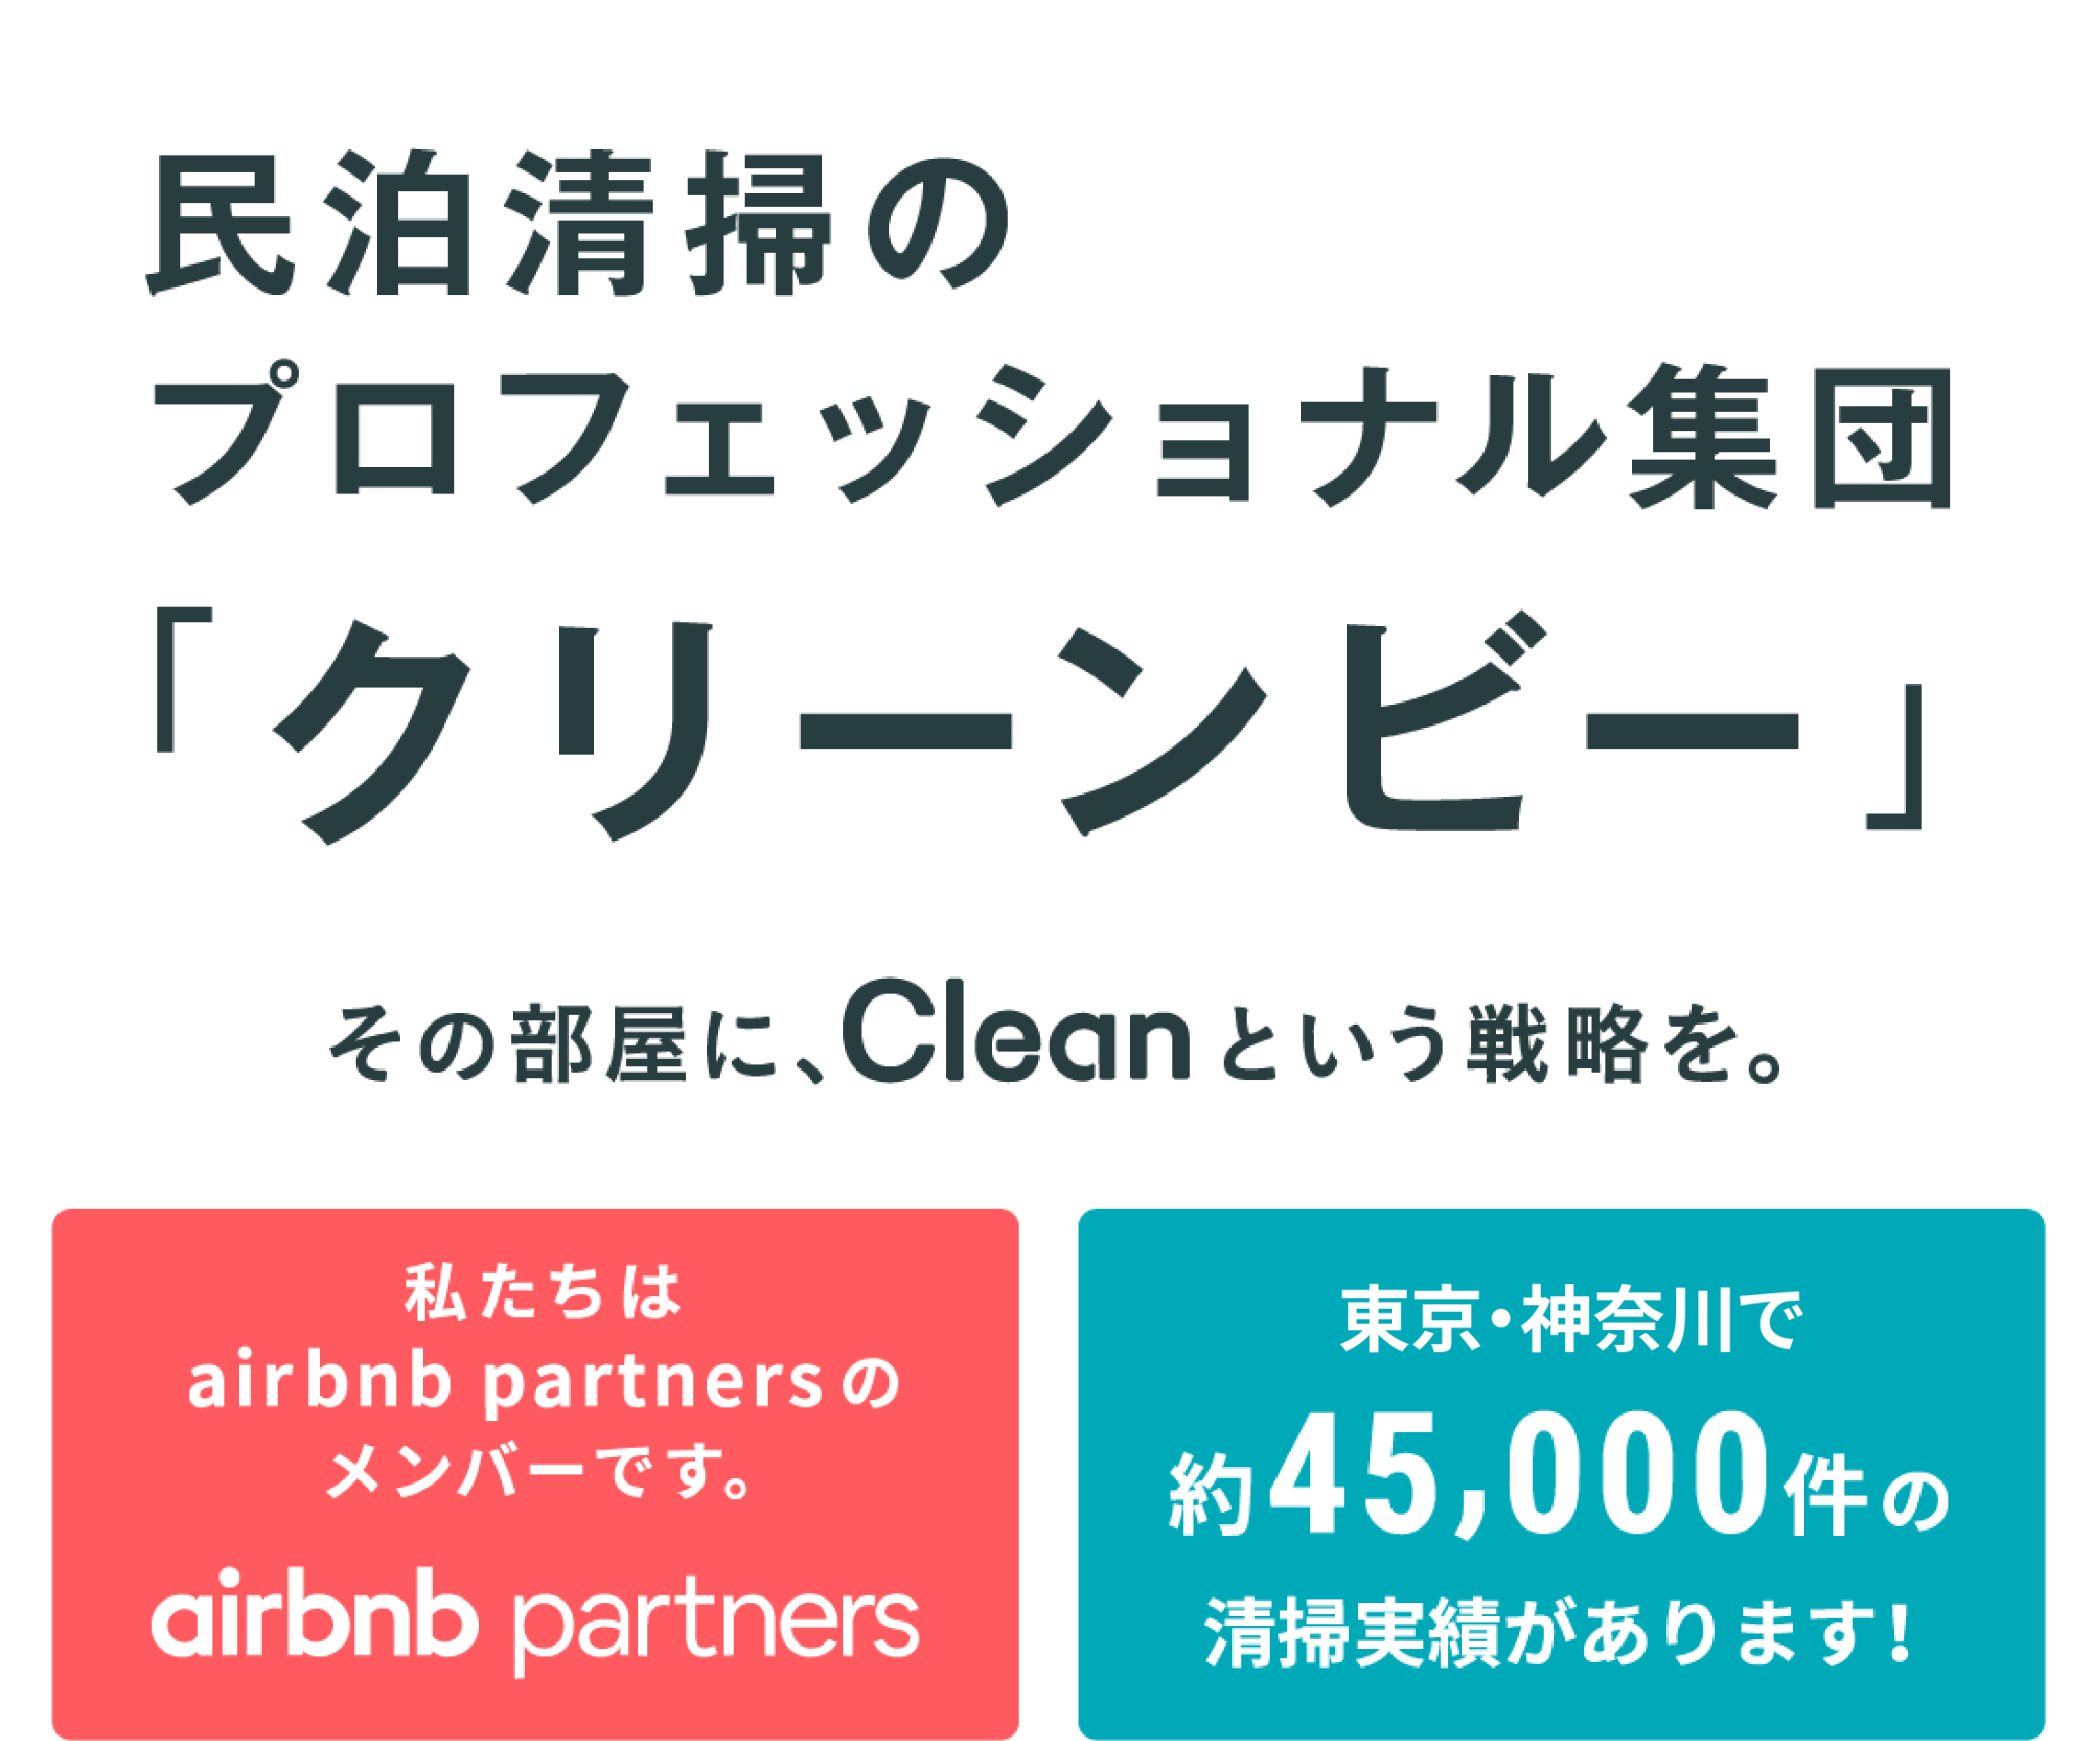 民泊清掃のプロフェッショナル集団「クリーンビー」その部屋に、Cleanという戦略を。東京都内・神奈川県内・その他関東で約45,000件の清掃実績があります！